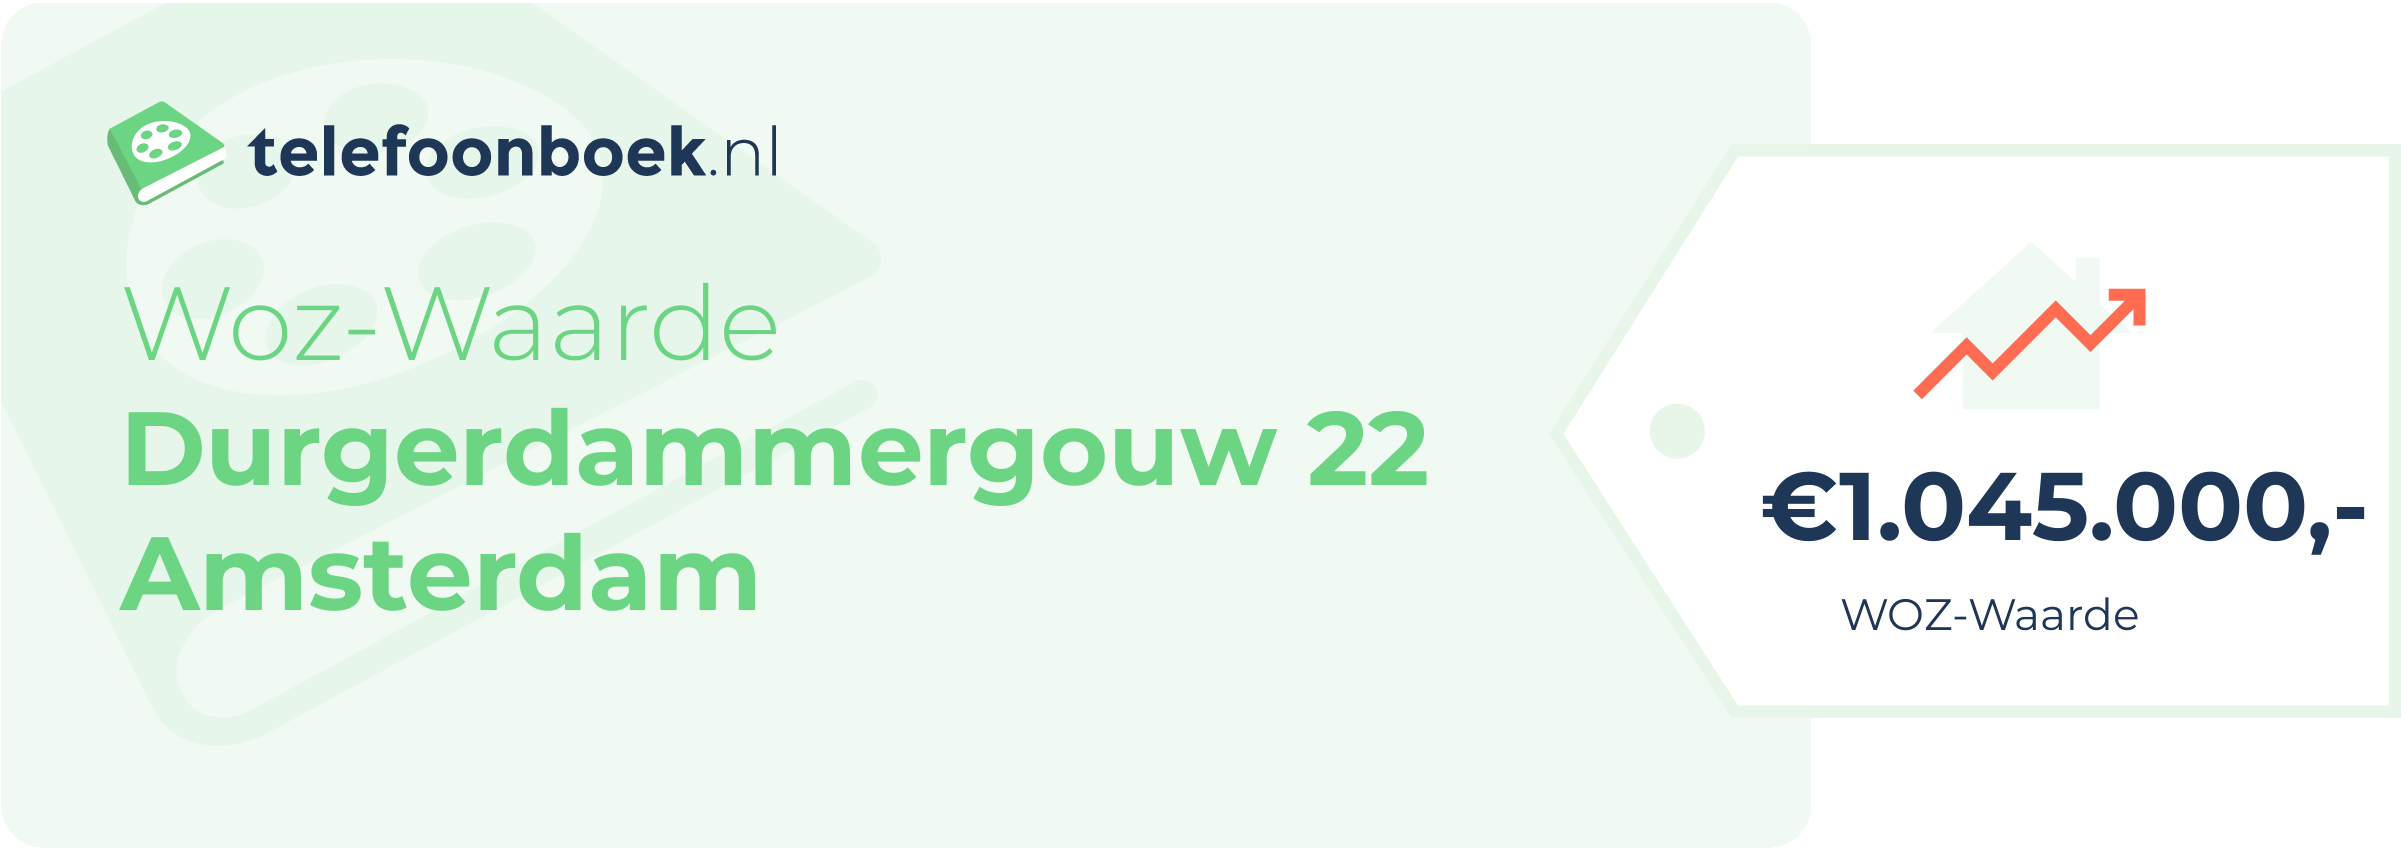 WOZ-waarde Durgerdammergouw 22 Amsterdam